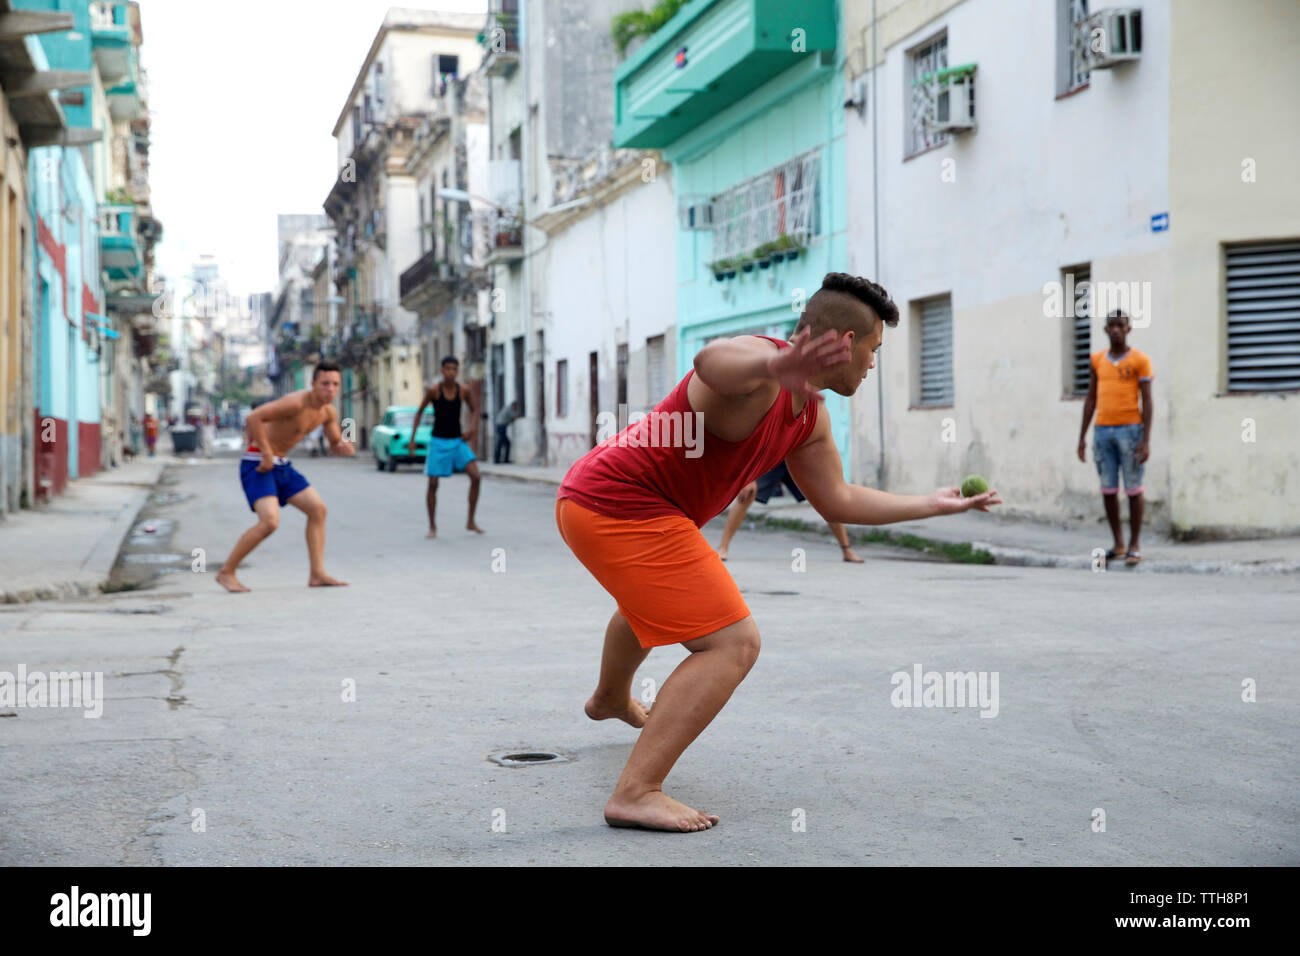 Amis jouant avec balle sur rue en ville Banque D'Images